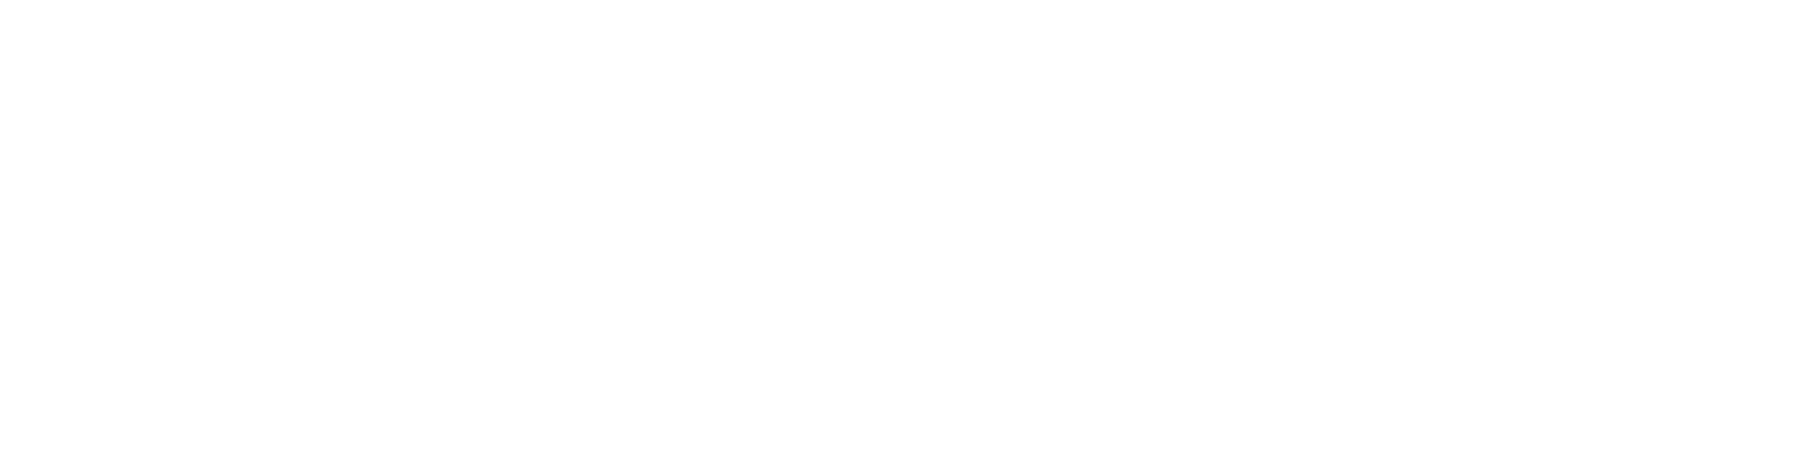 BERK Consulting, Inc. 